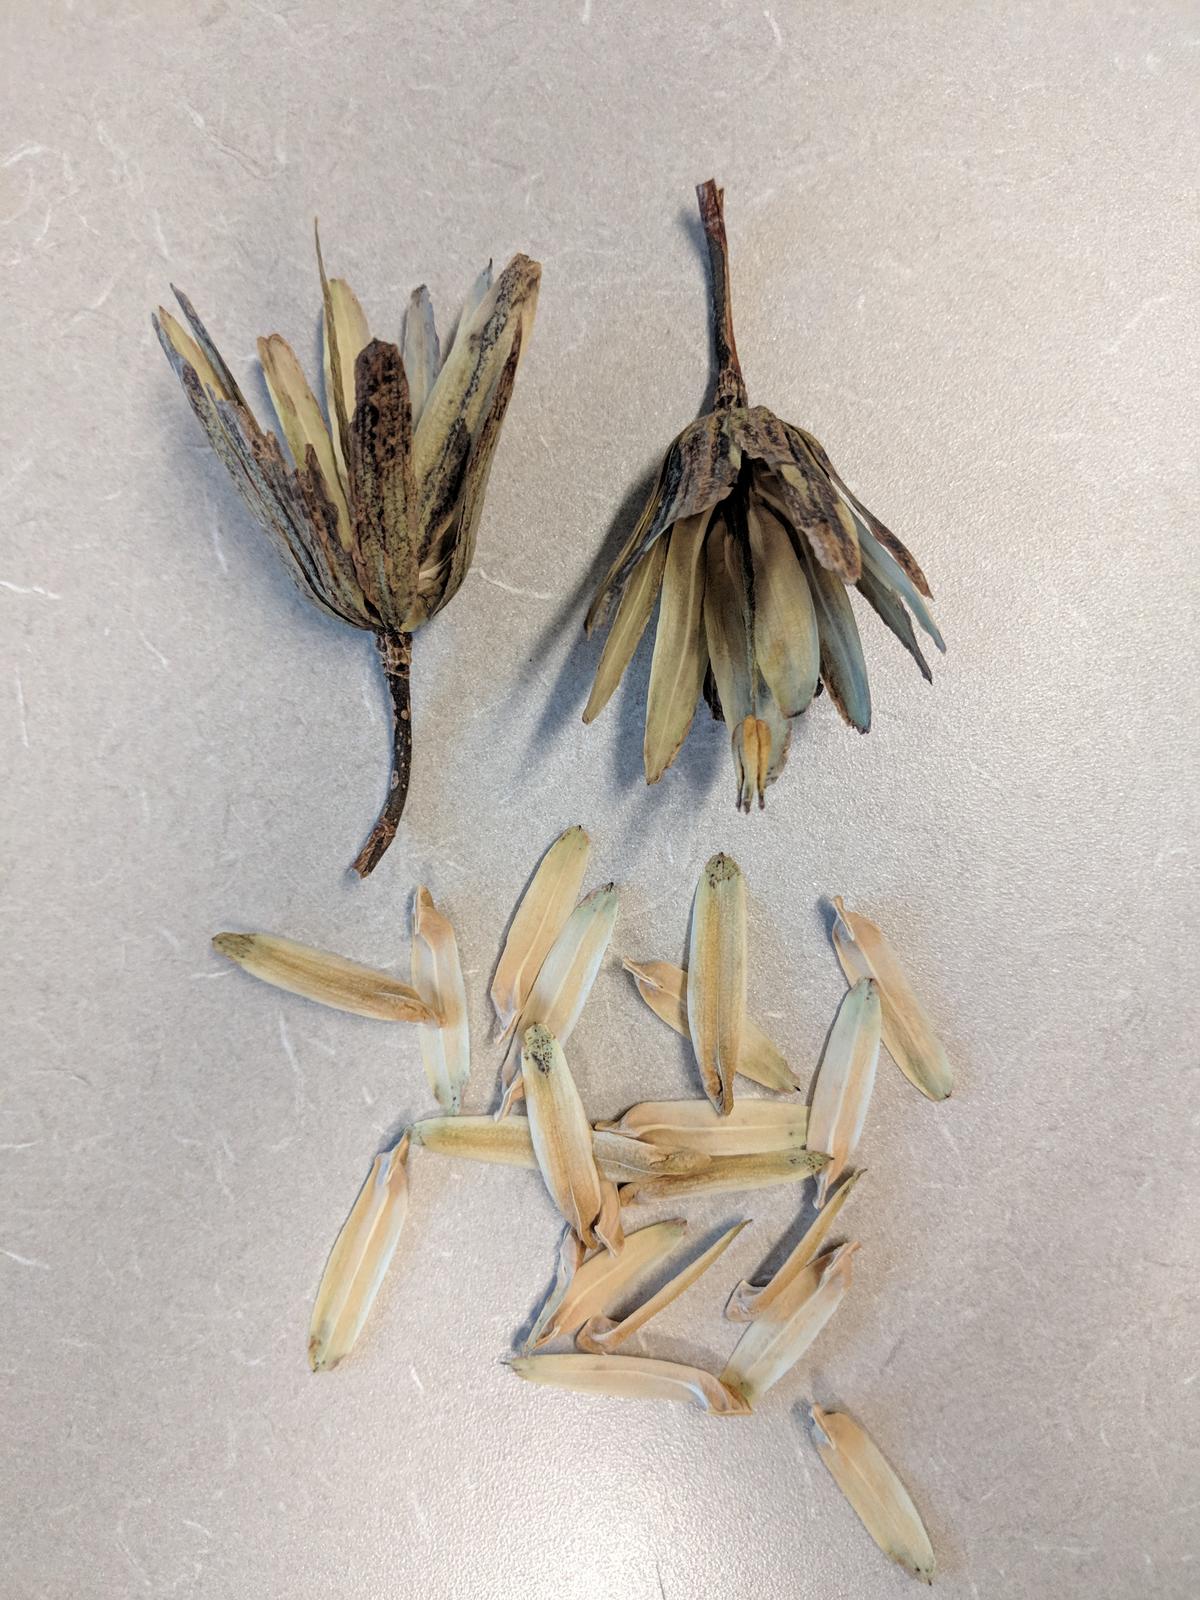 tulip tree seeds